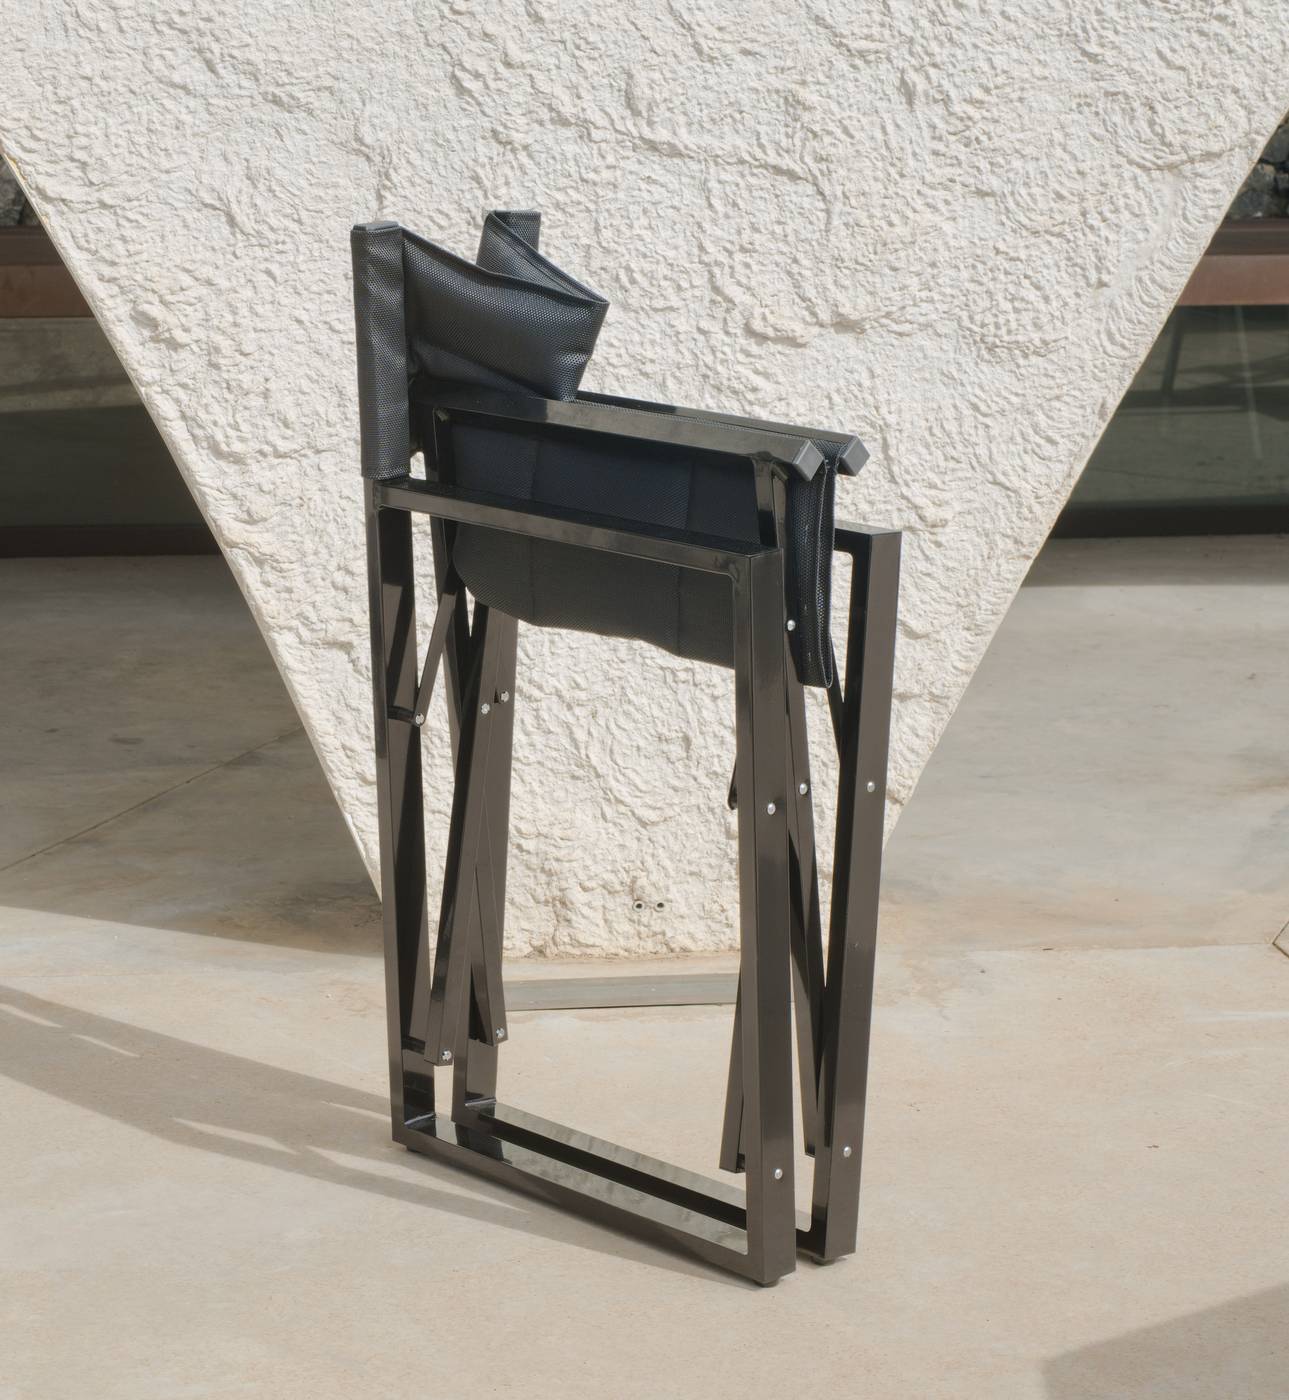 Sillón Plegable Aluminio Sinara - Sillón de director plegable, de color blanco o antracita, con asiento y respaldo acolchado de textilen